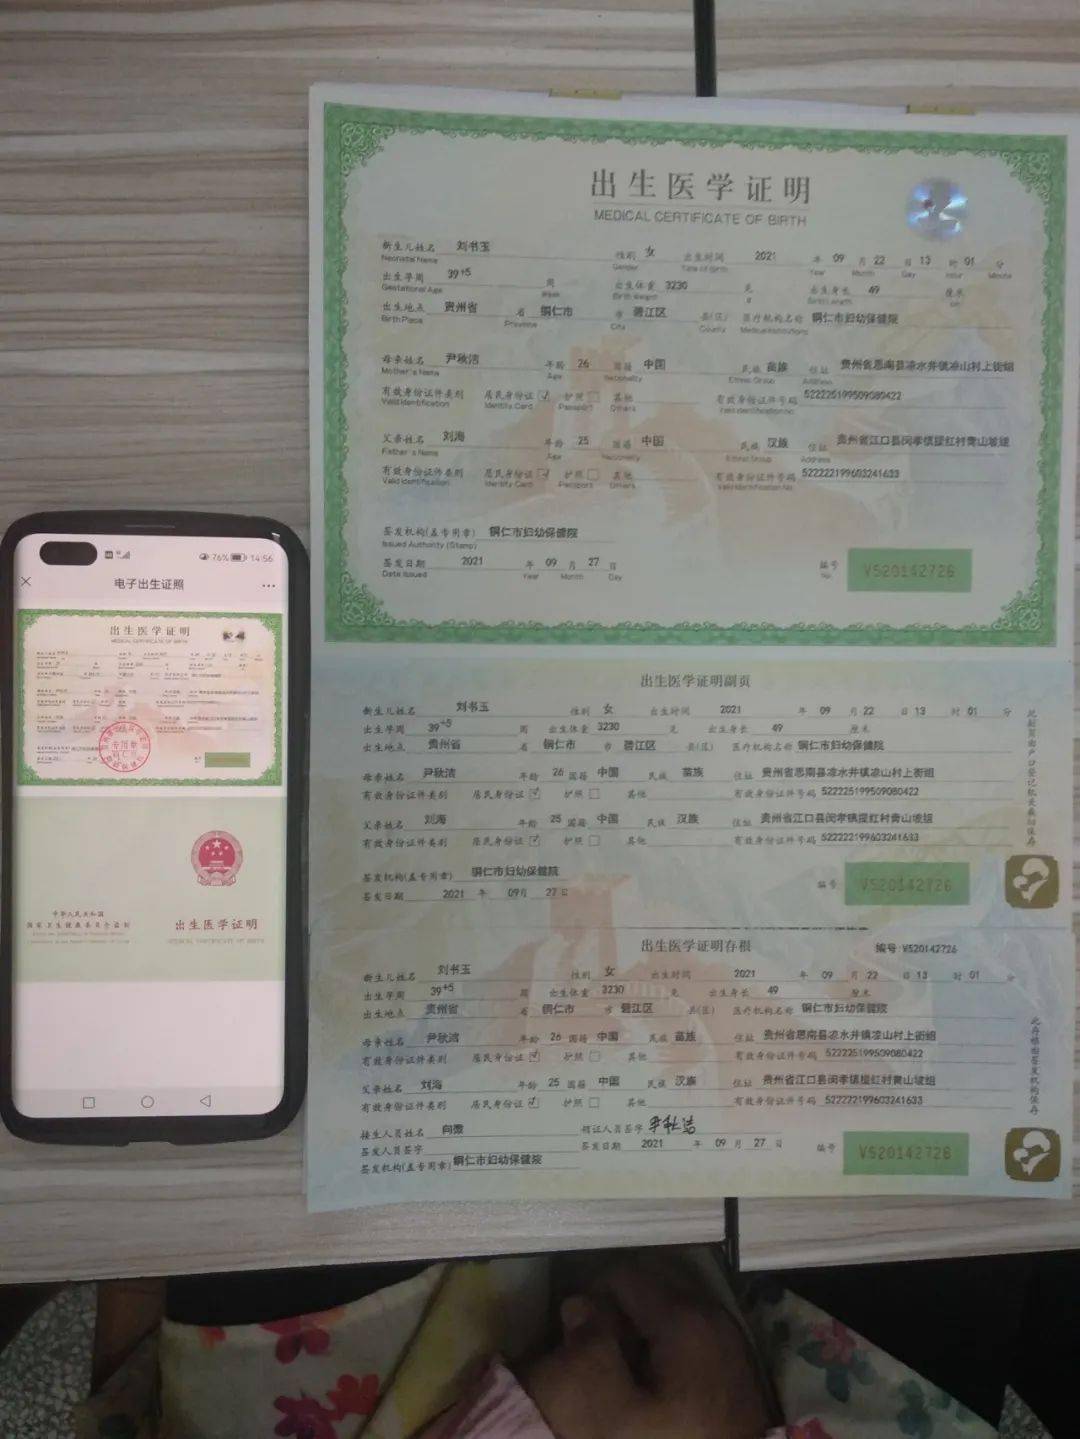 10分钟!贵州首张"出生医学证明电子证照"签发,方便又安全